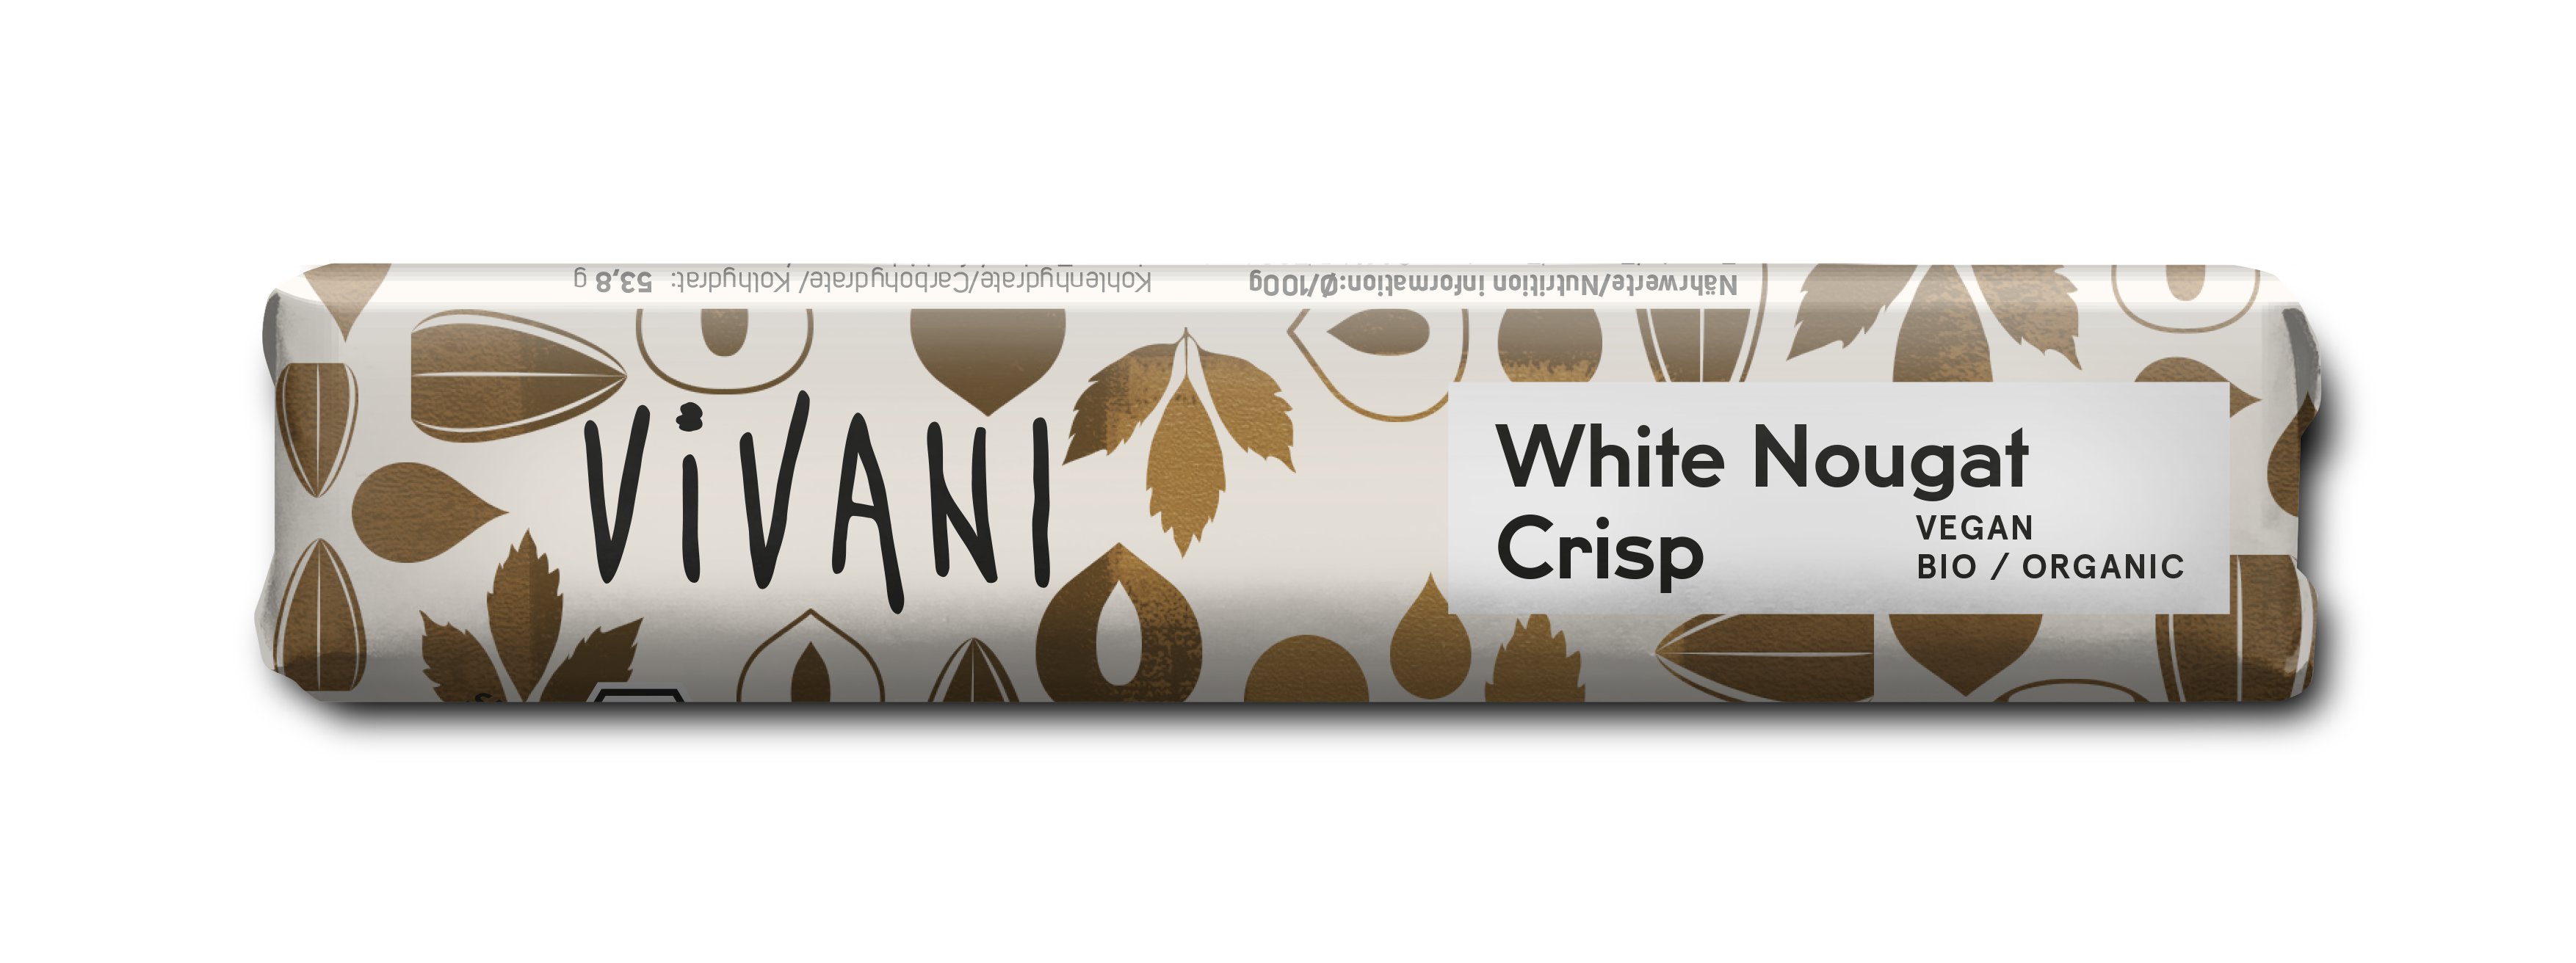 Vivani White Nougat Crisp 35 g